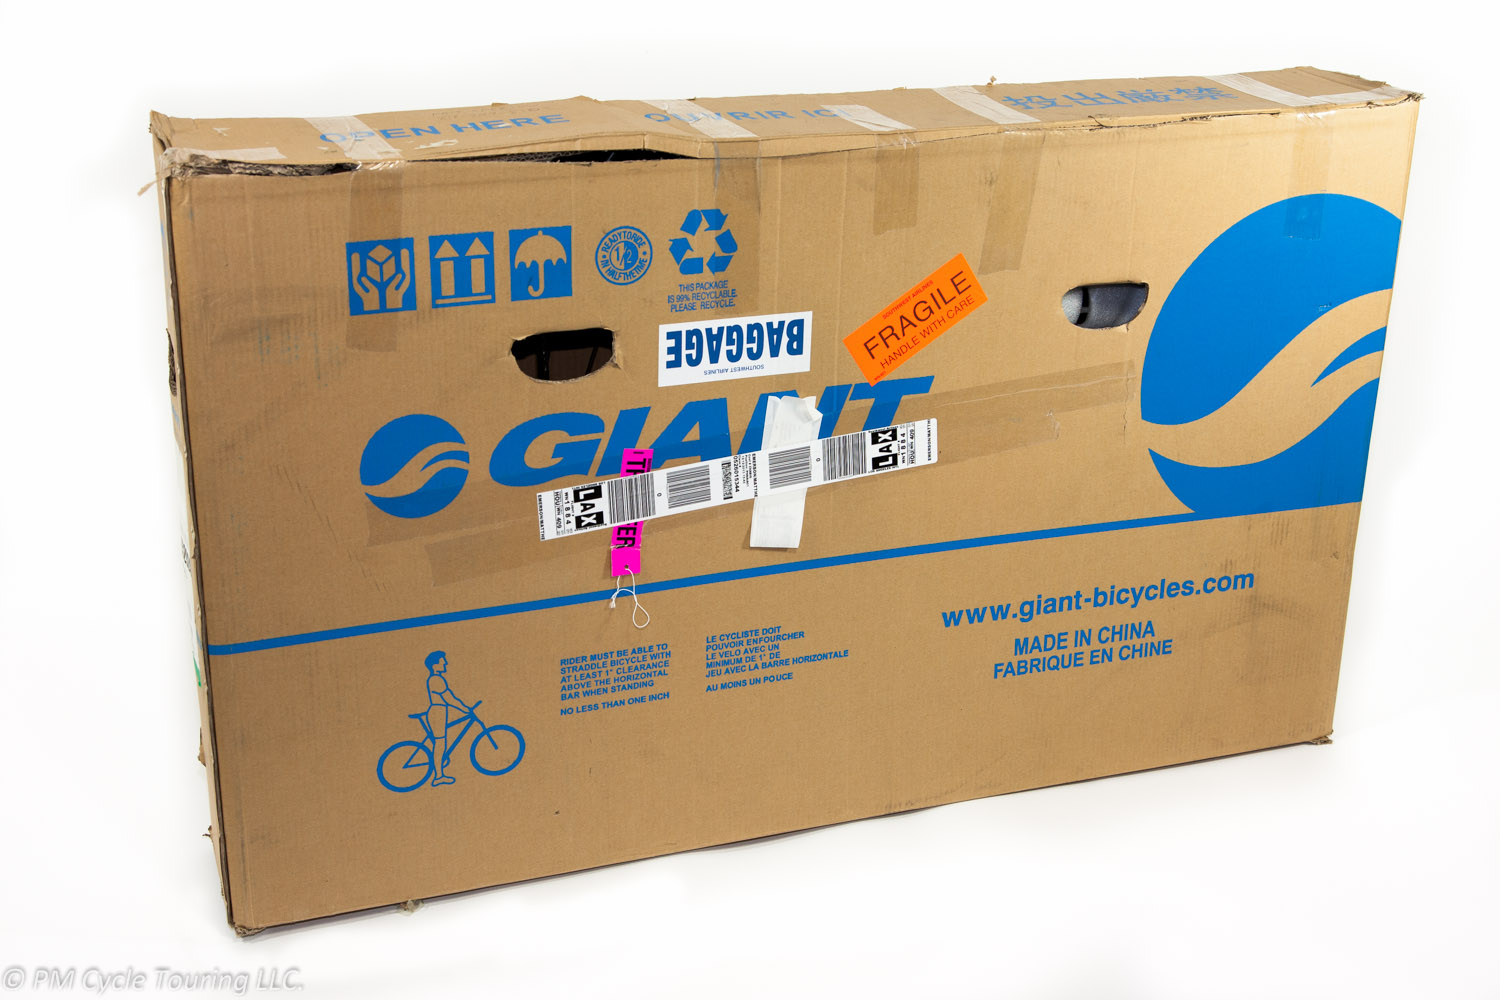 Large cardboard bicycle box